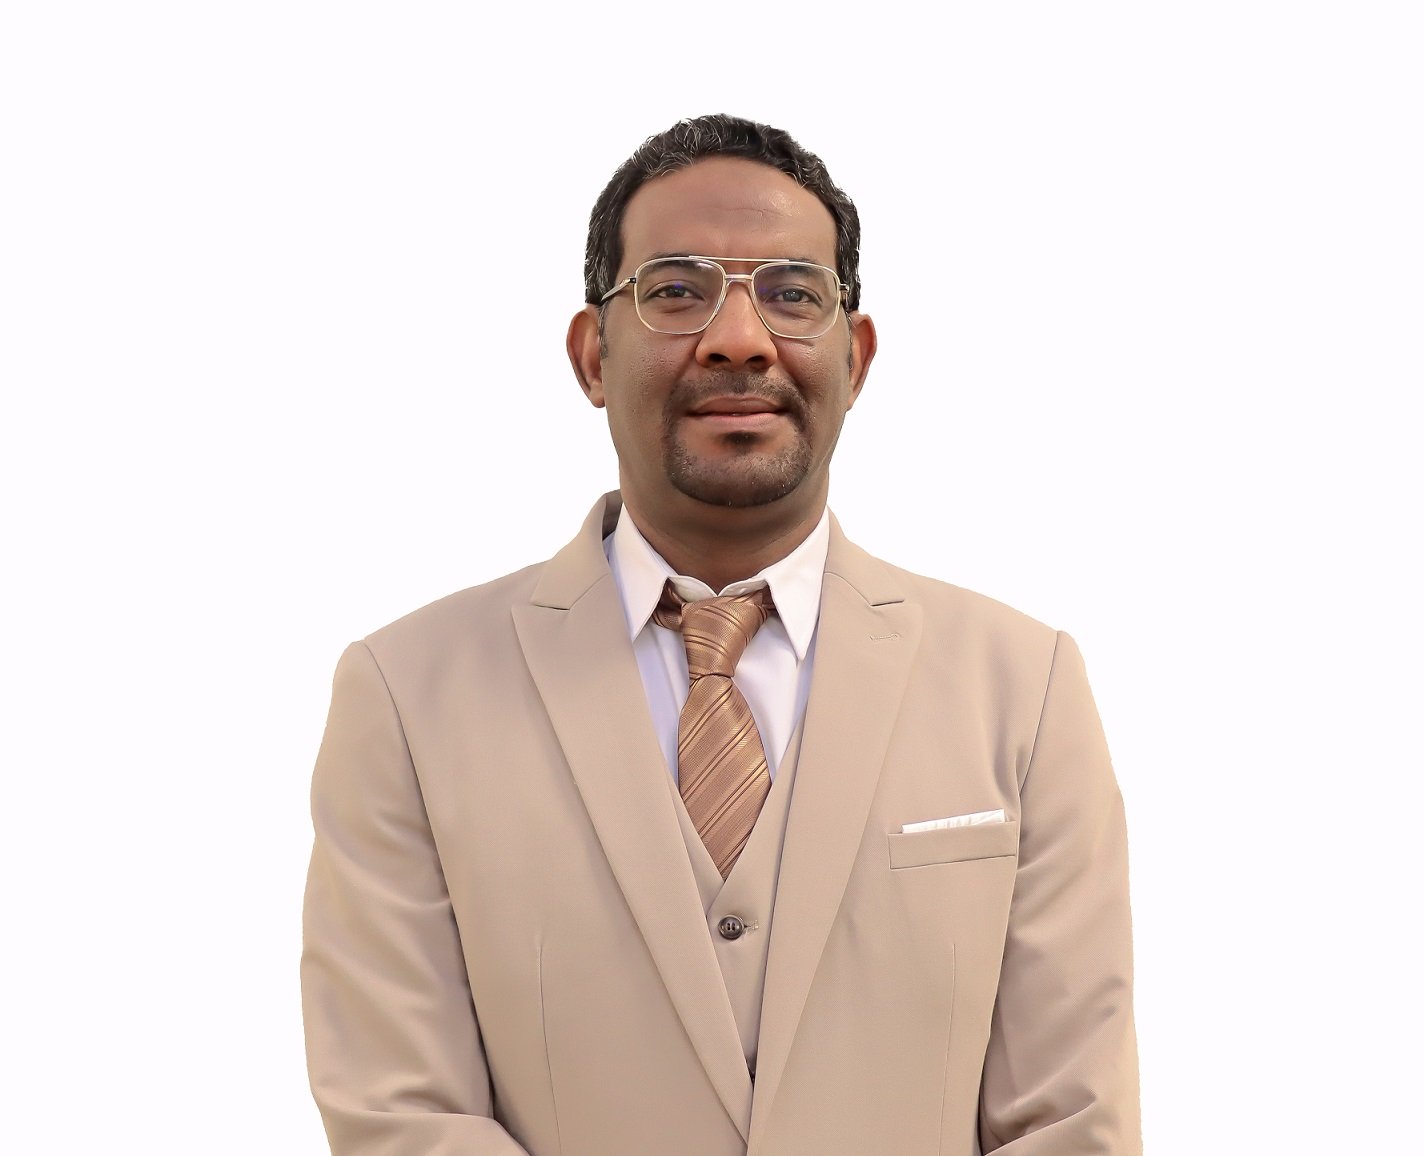 Dr. Mohammed Elhajhamed Hassan Ali